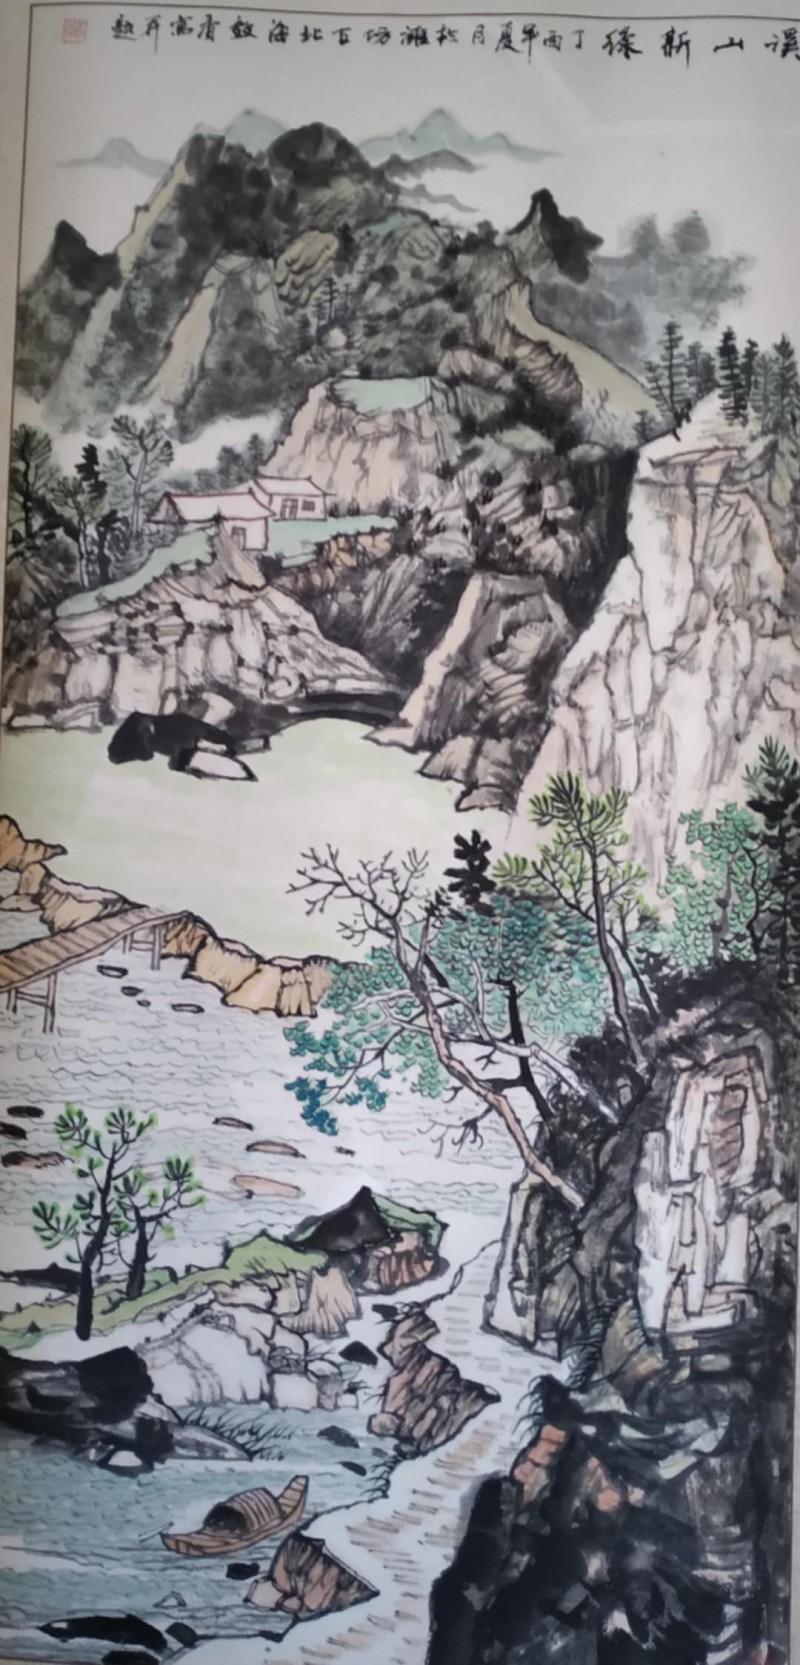 中国楹联学会中宣盛世文化艺术交流中心书画风采展示——王效香